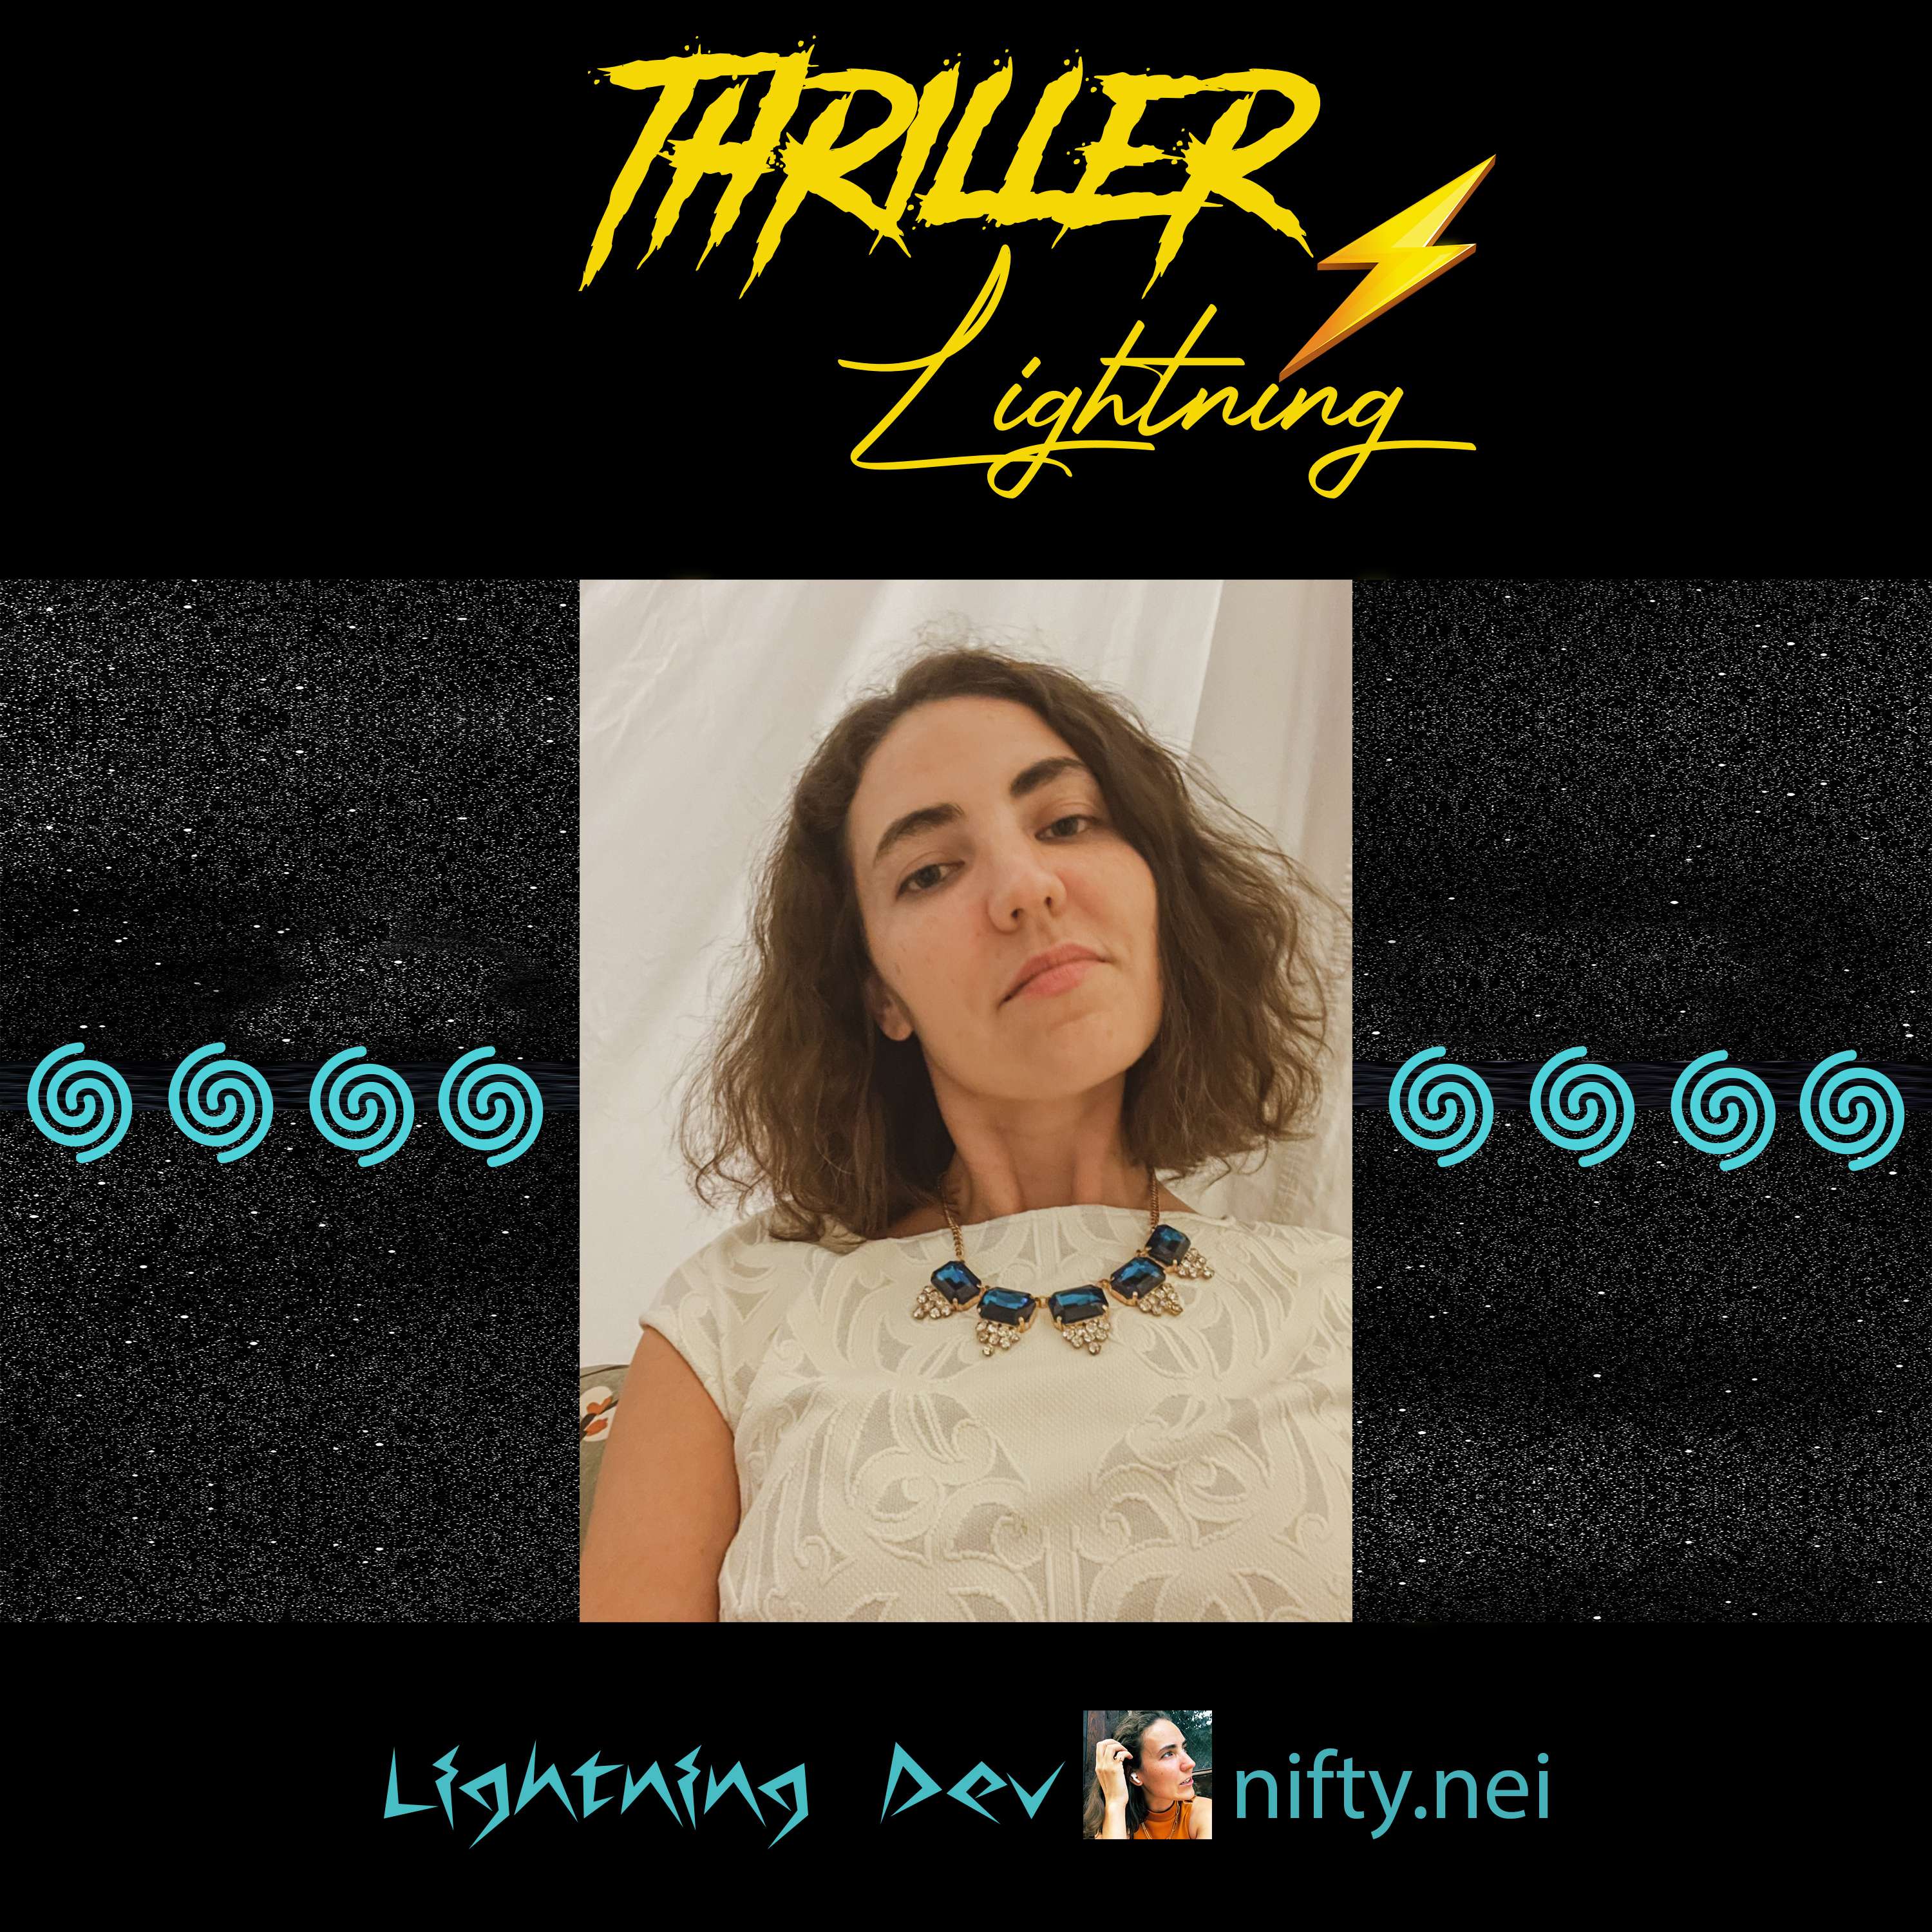 Thriller Lightning: Lisa Neigut of Blockstream